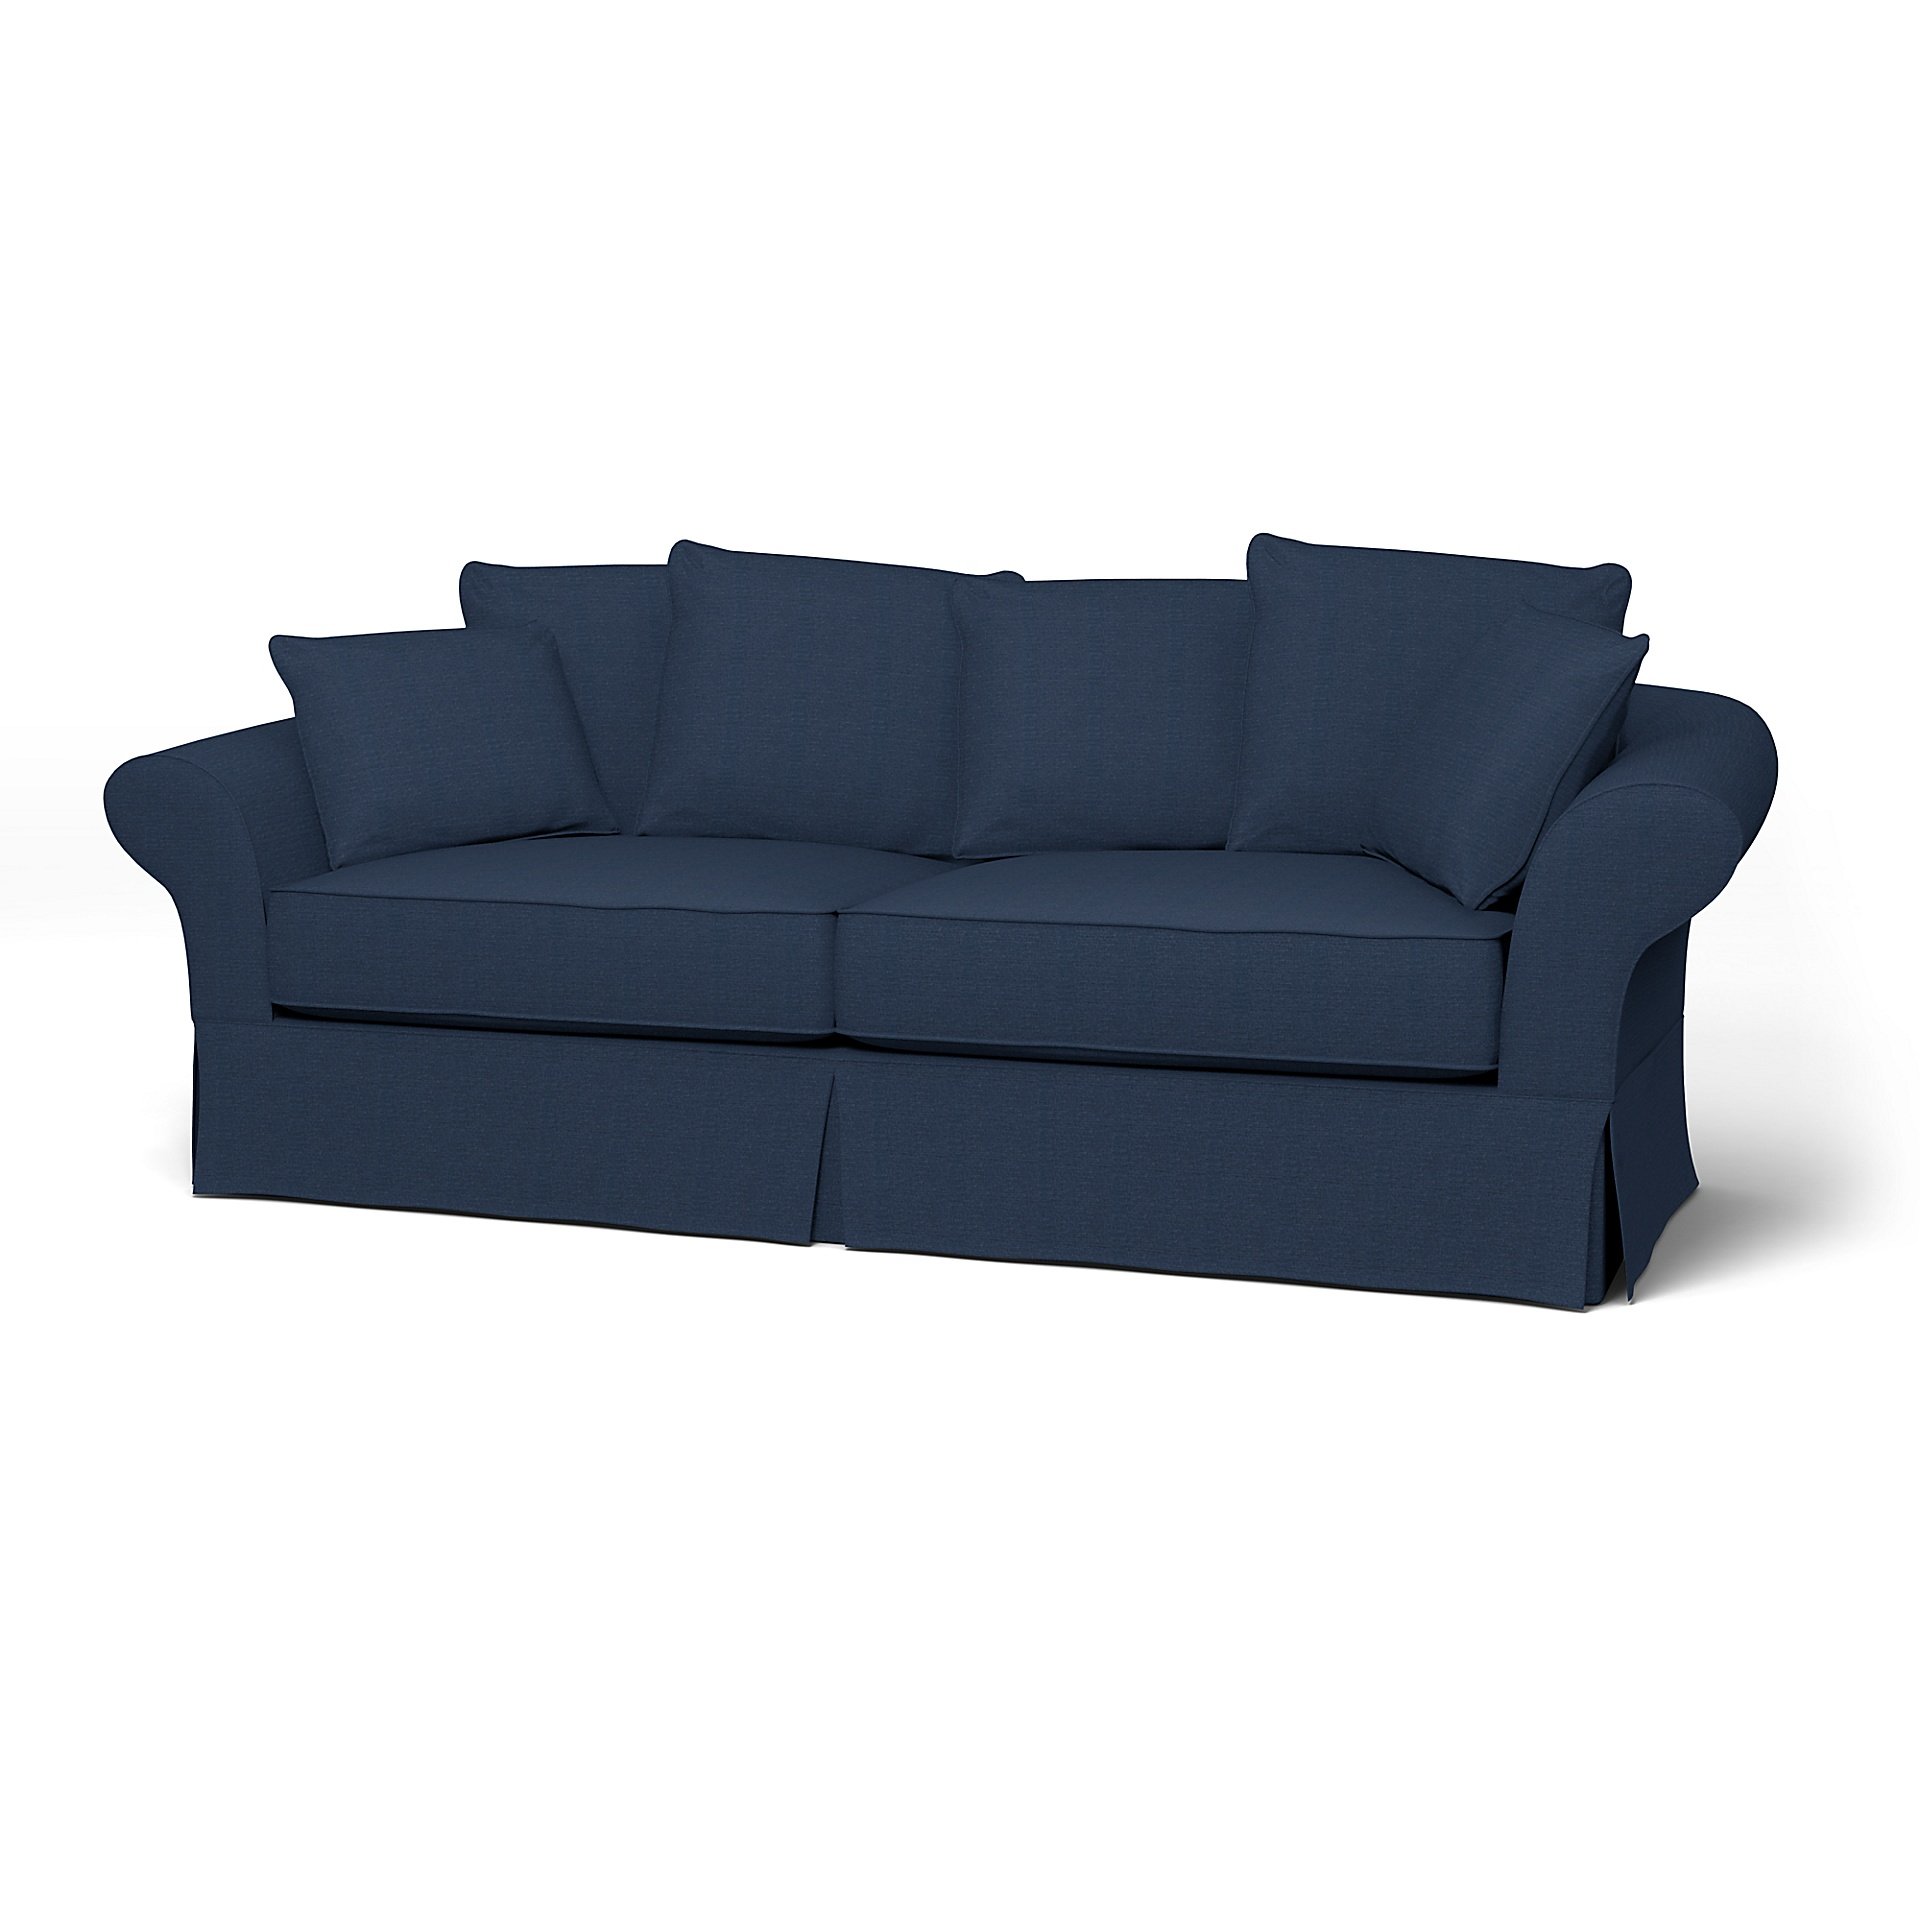 IKEA - Backamo 3 Seater Sofa Cover, Navy Blue, Linen - Bemz